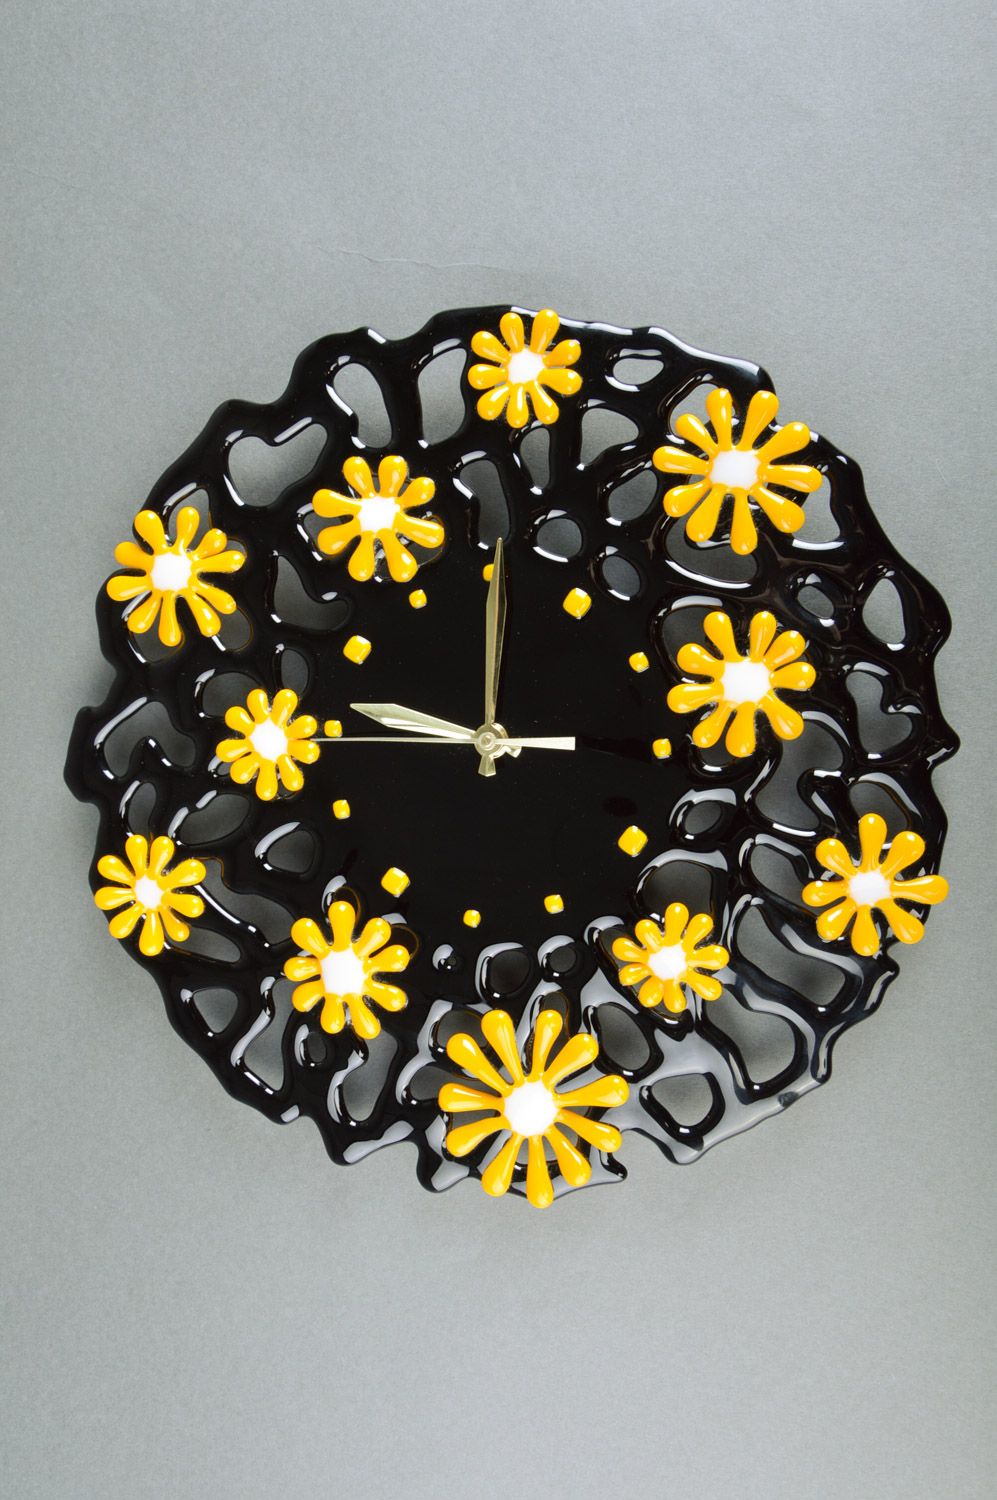 Часы из стекла фьюзинг черные в желтый цветочек круглые необычные ручная работа фото 2